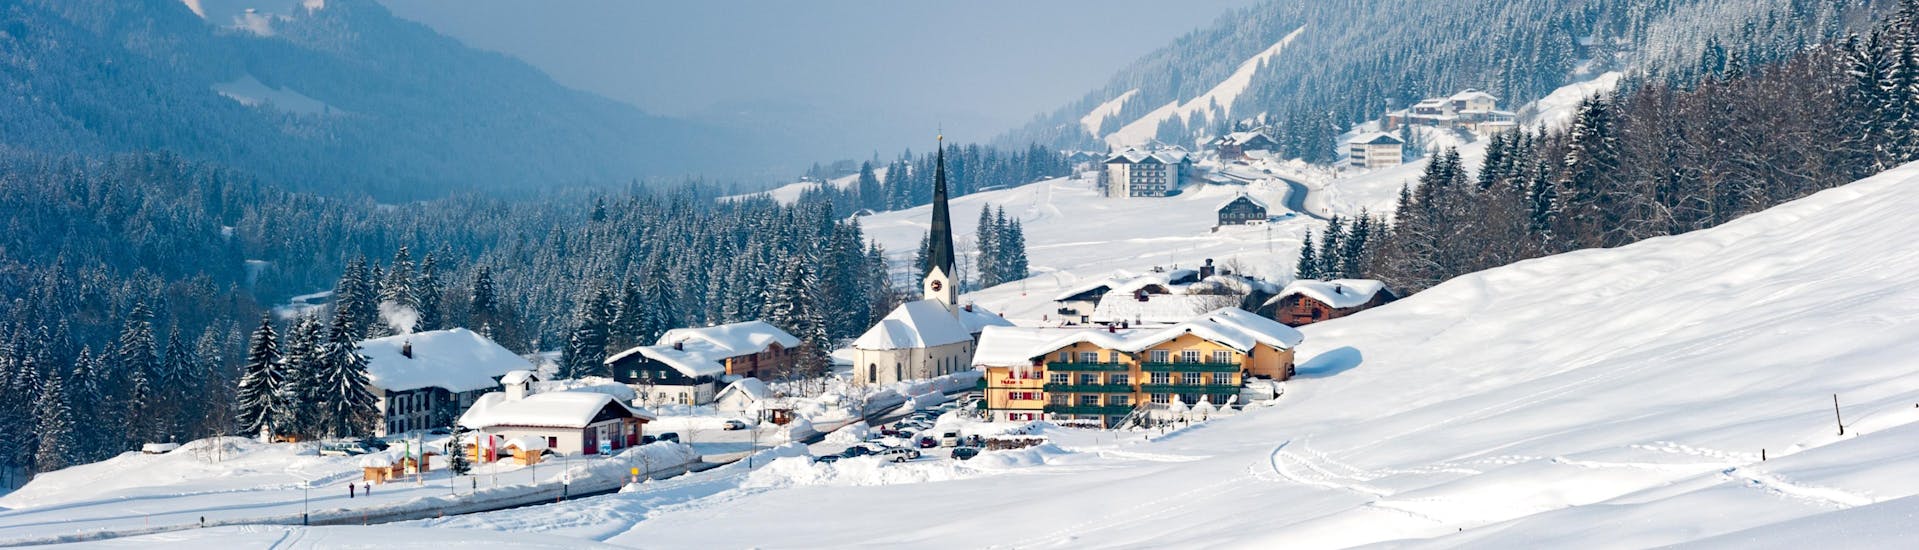 Imagen de un pequeño pueblo en las pistas de Allgäu donde se pueden reservar clases de esquí.